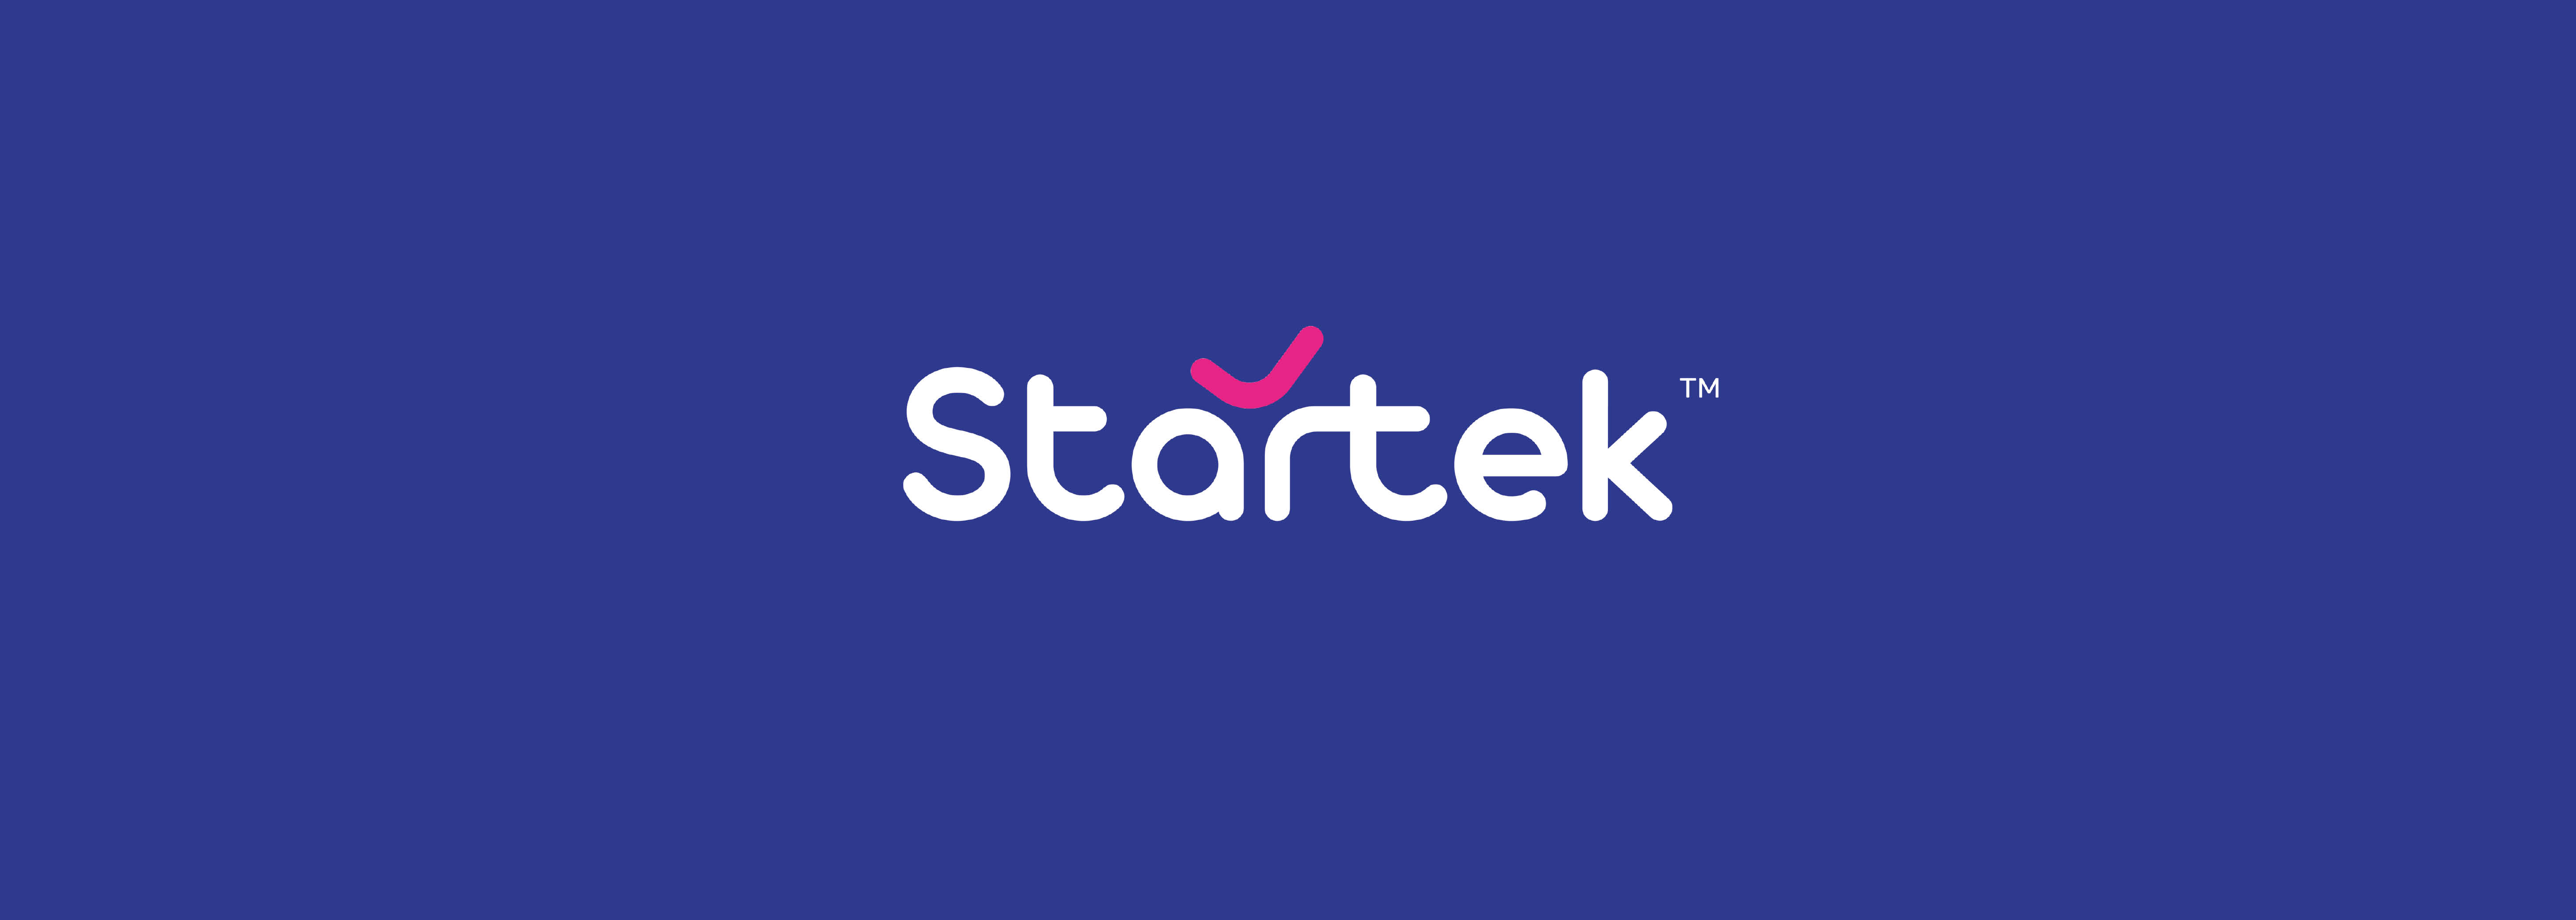 Startek new logo banner